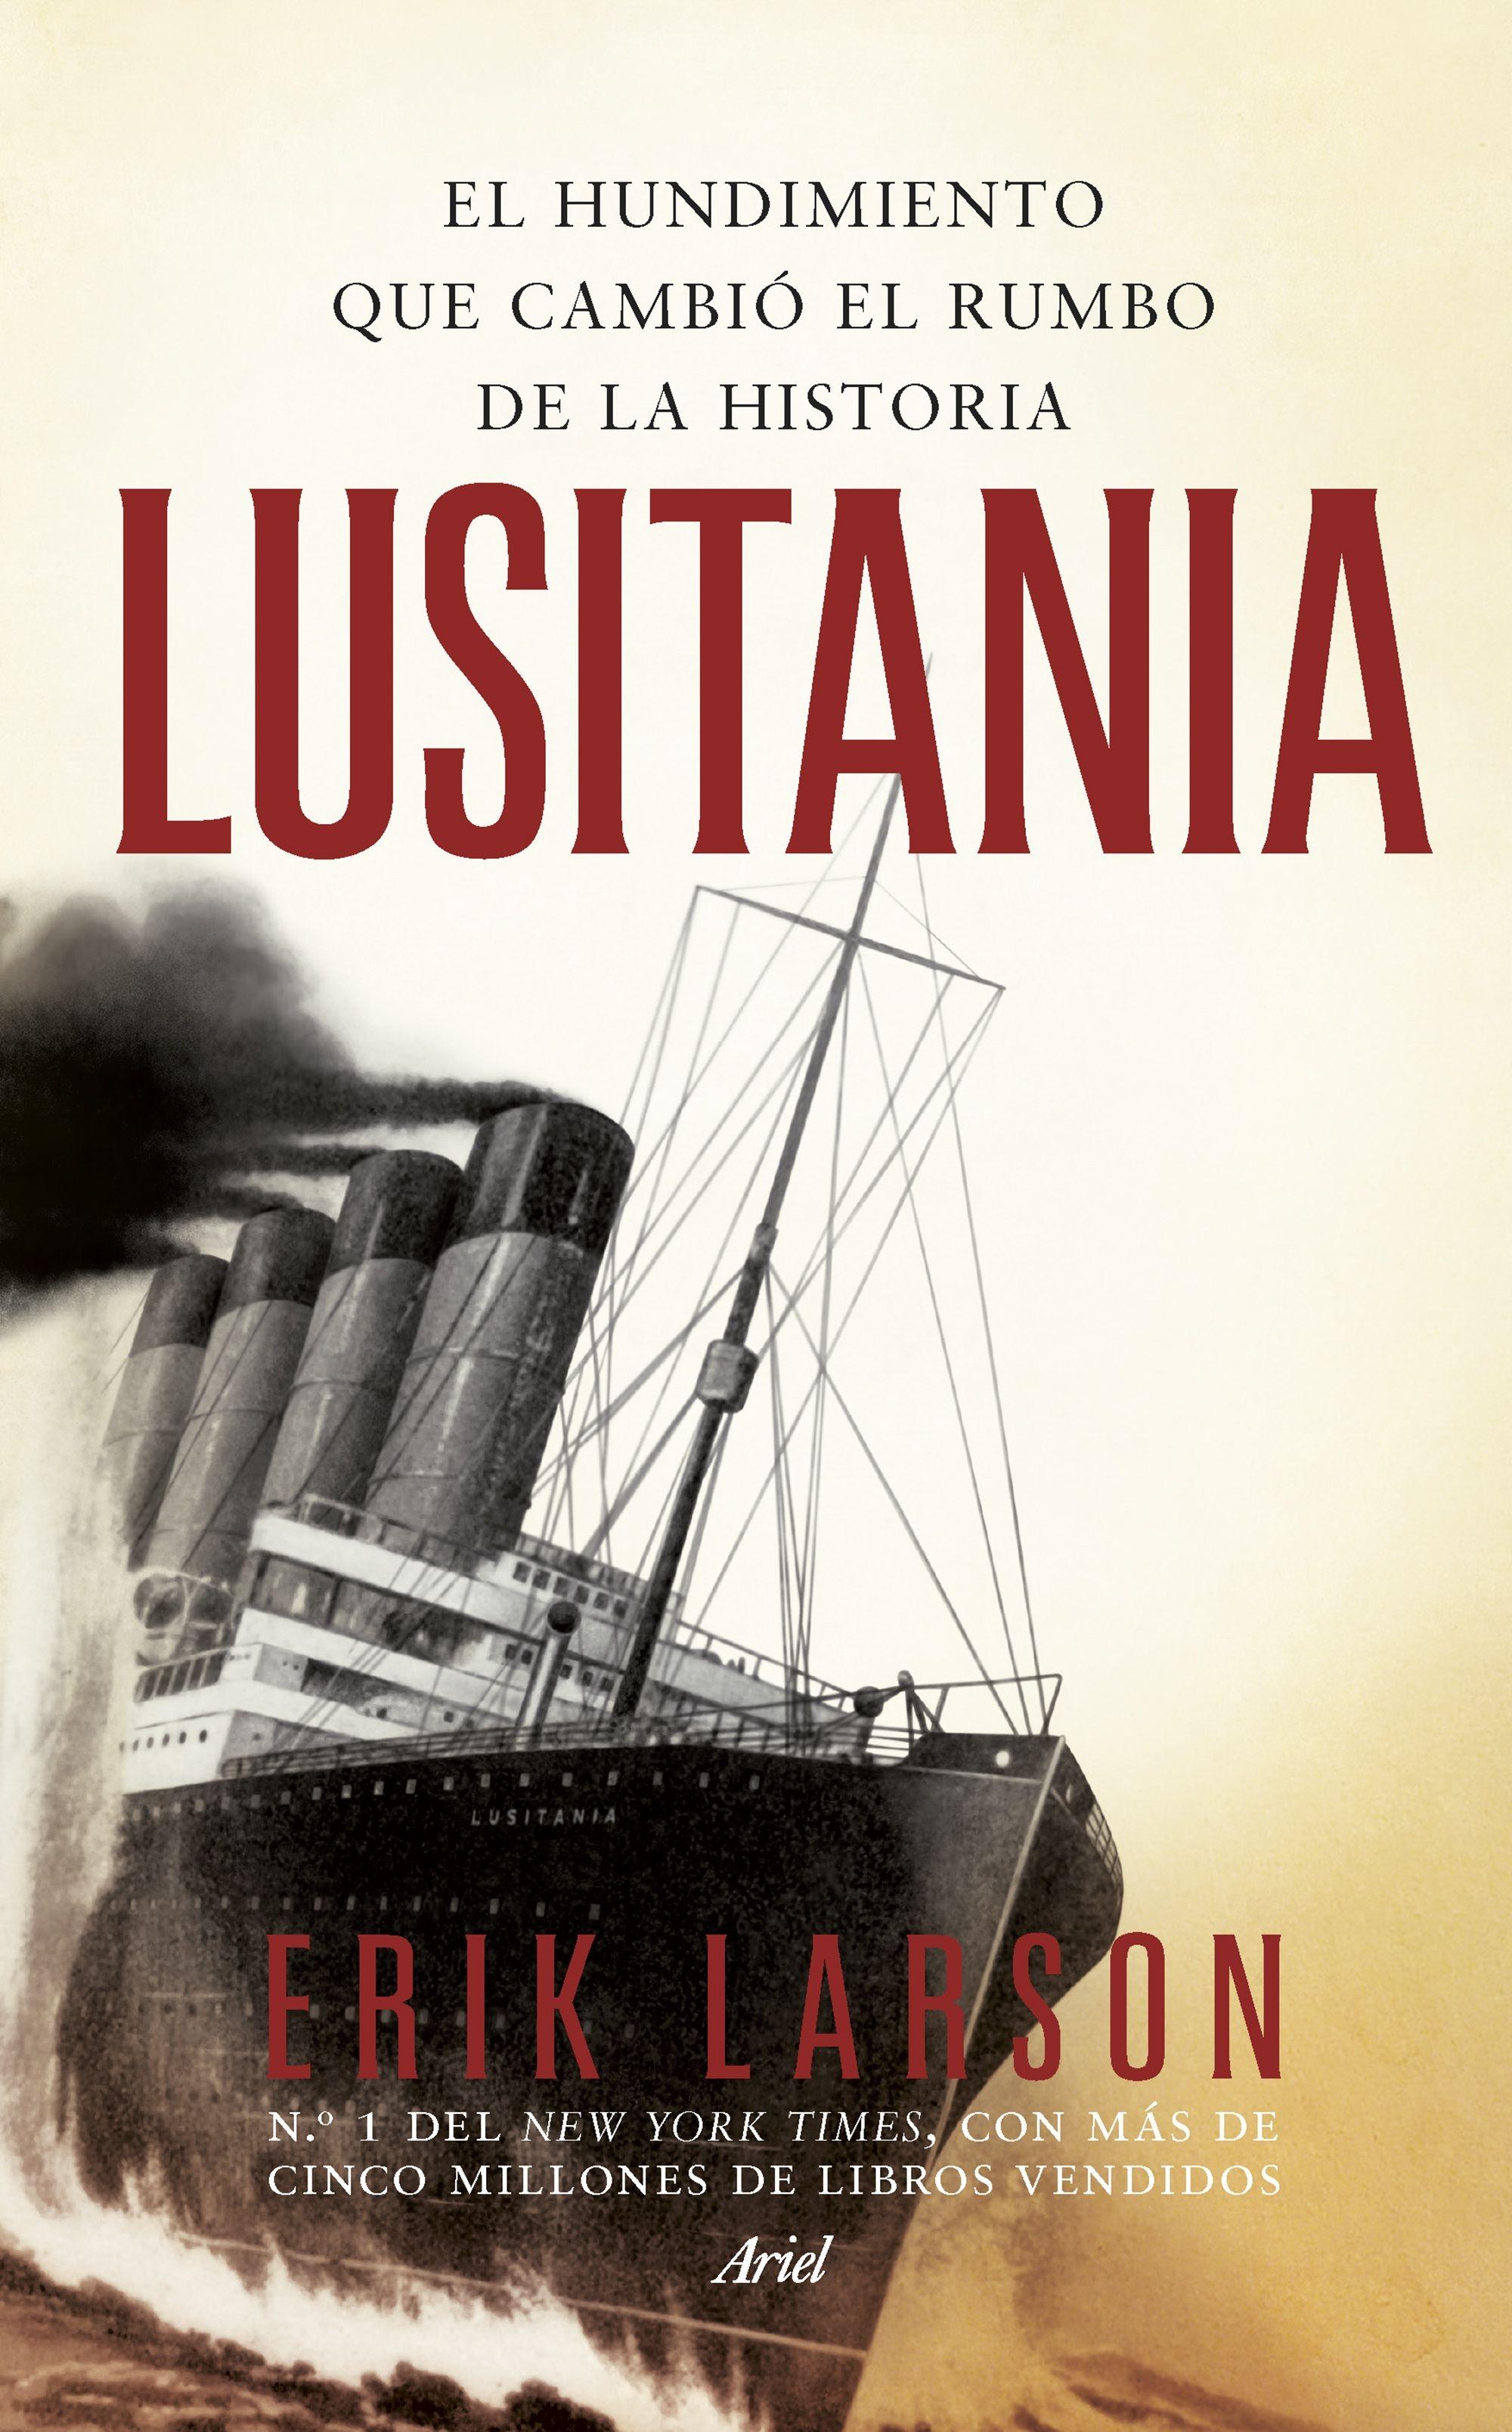 El libro que recomendamos esta semana…» Lusitania «El hundimiento que cambió el rumbo de la historia»